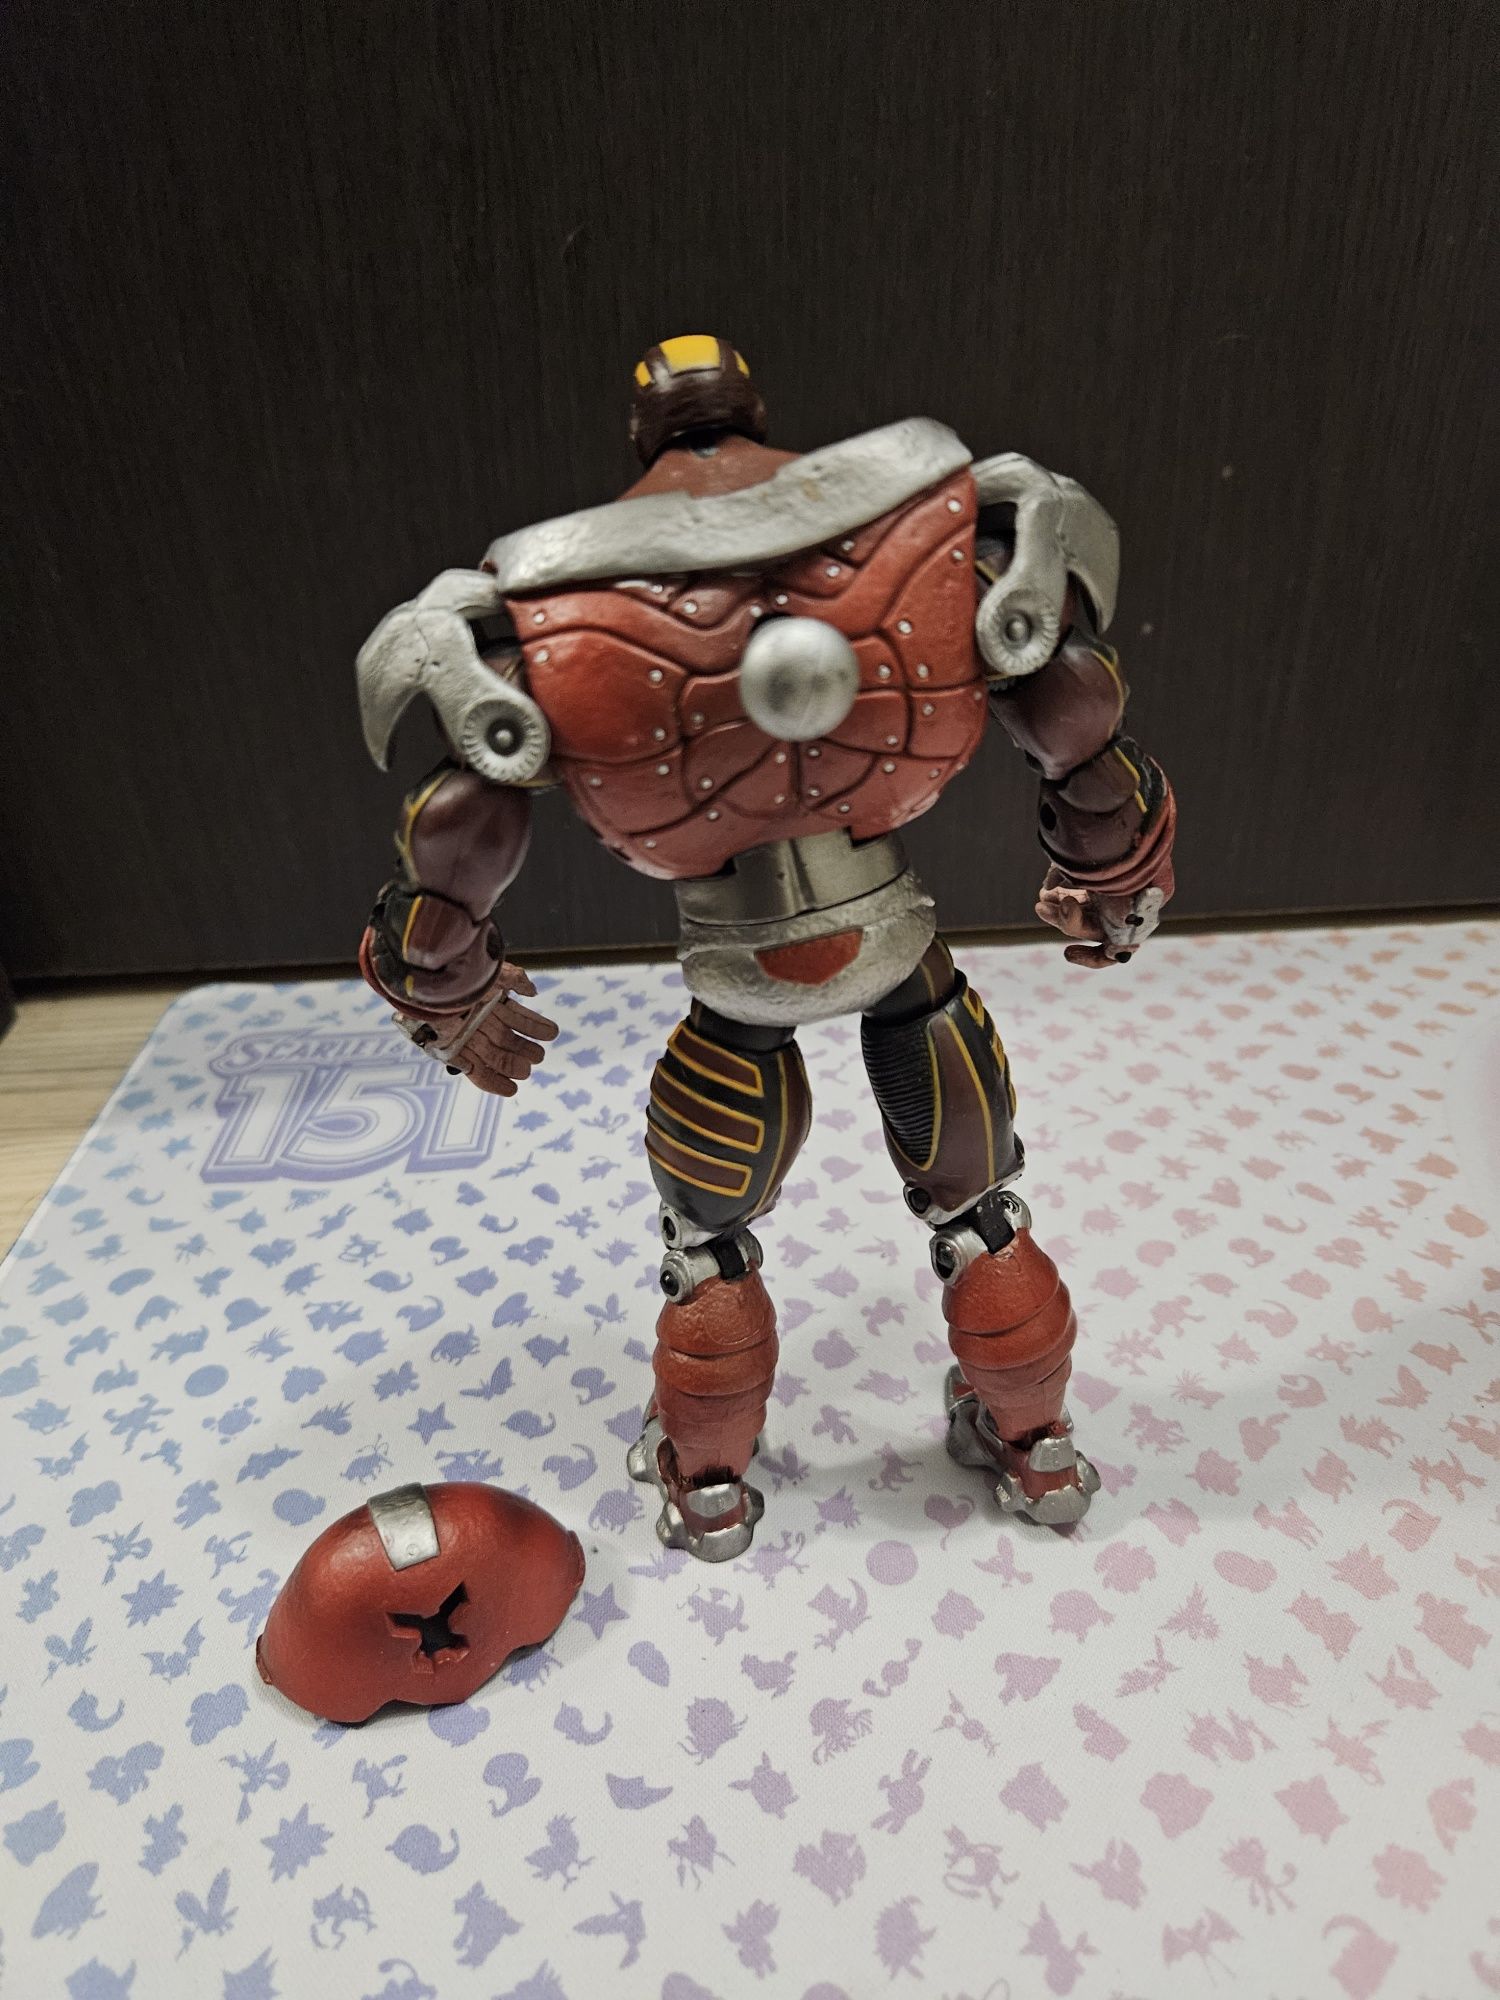 Figurina Marvel Juggernaut